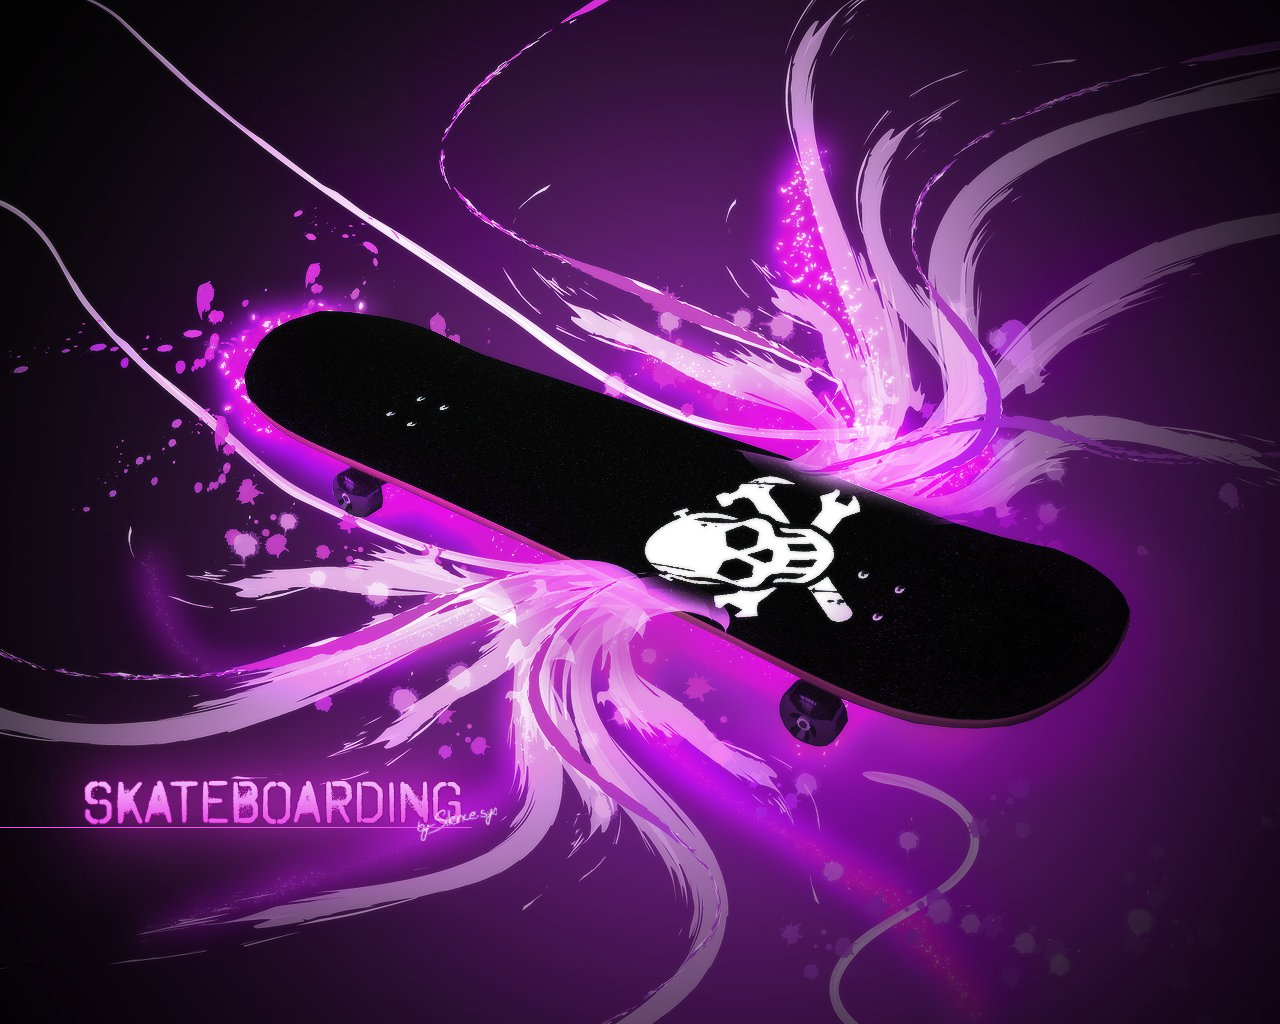 49+] Cool Skateboard Wallpapers - WallpaperSafari